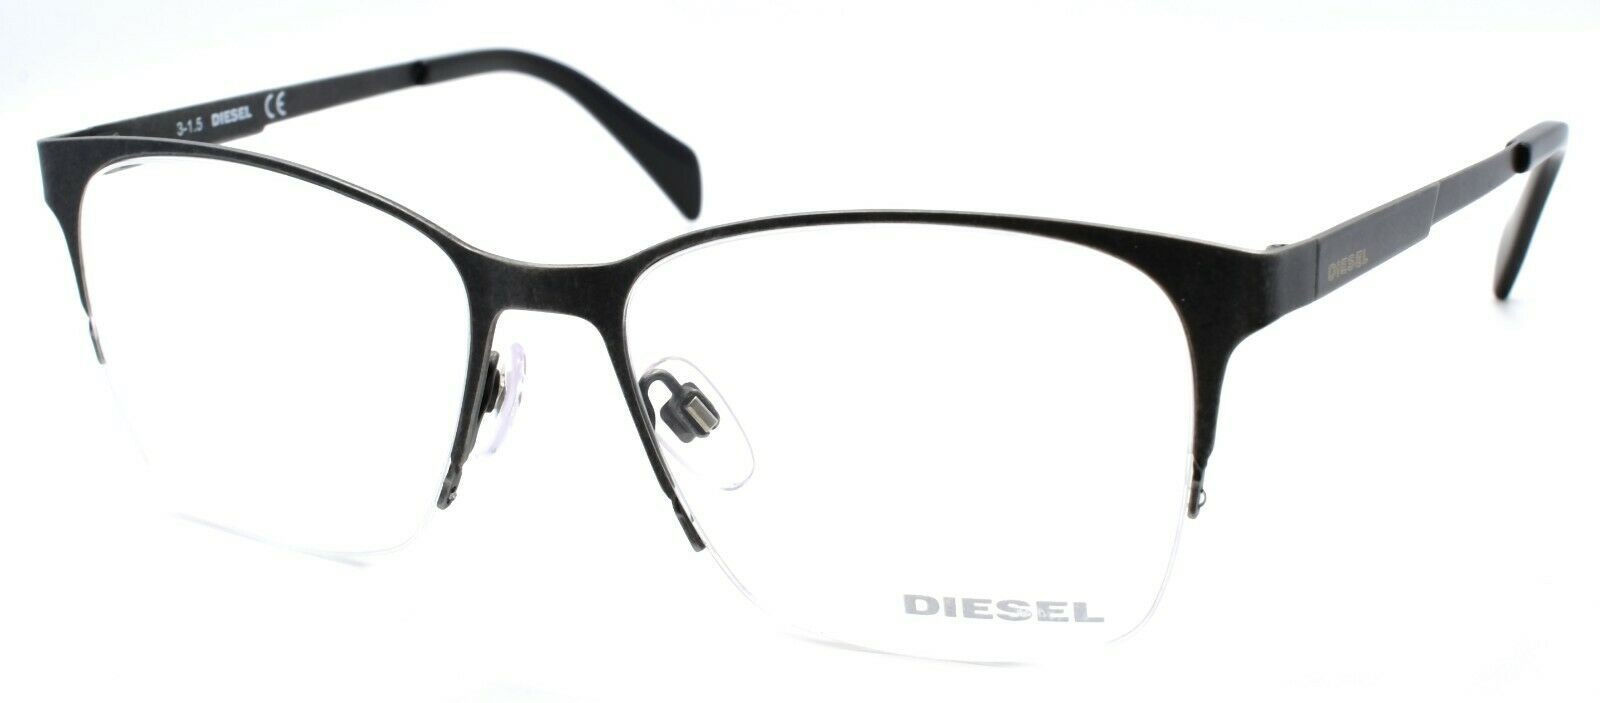 1-Diesel DL5152 009 Unisex Eyeglasses Frames Half Rim 52-16-145 Distressed Grey-664689707560-IKSpecs